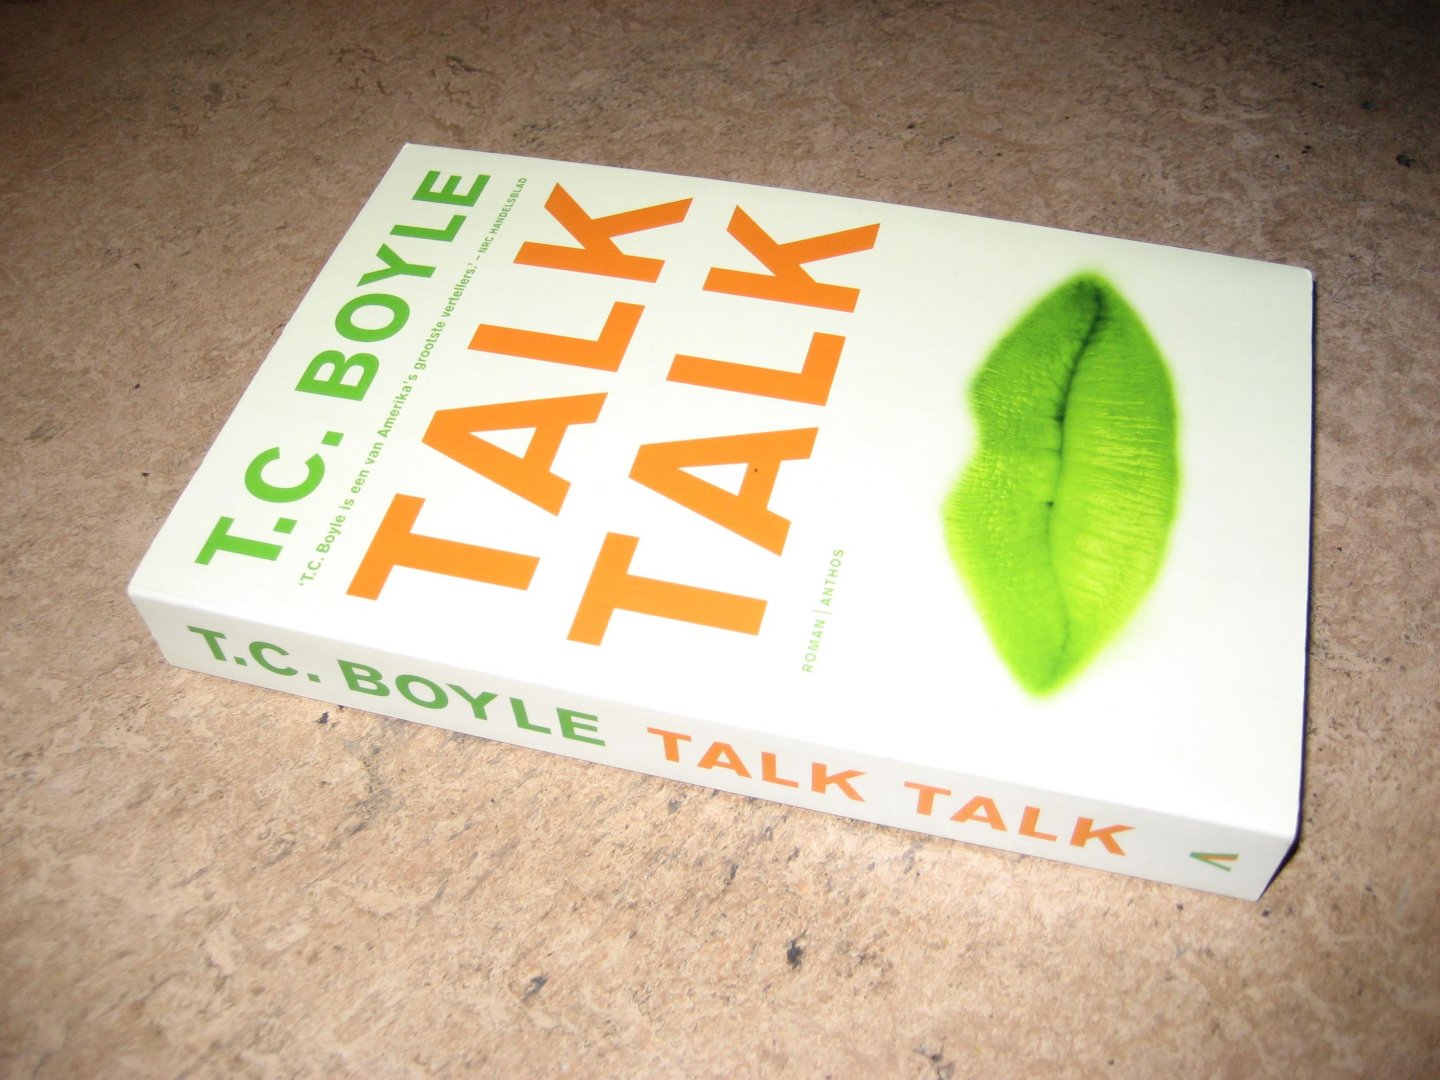 Boyle, T.C. - Talk Talk